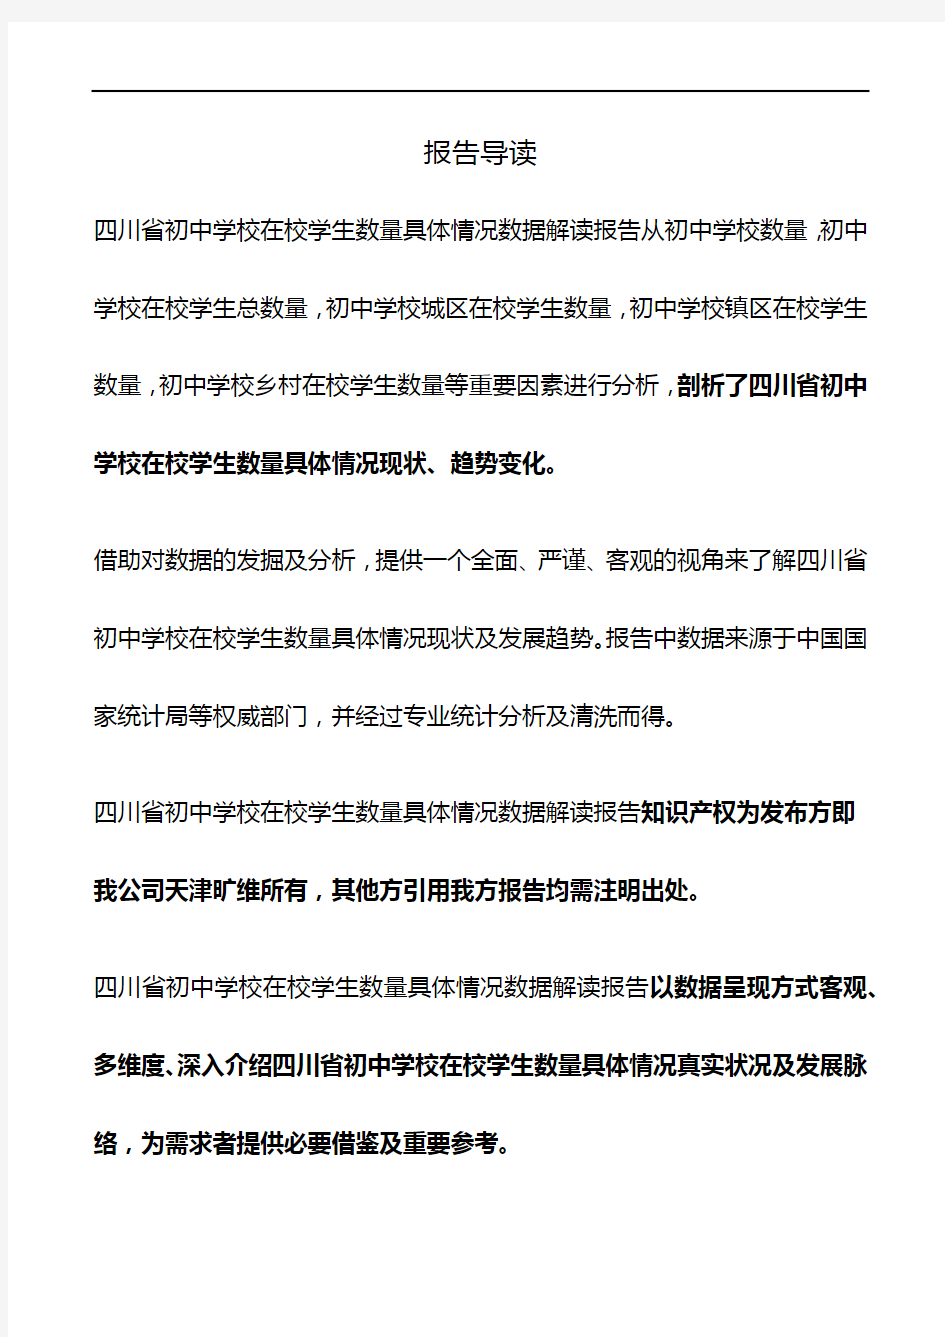 四川省初中学校在校学生数量具体情况3年数据解读报告2019版